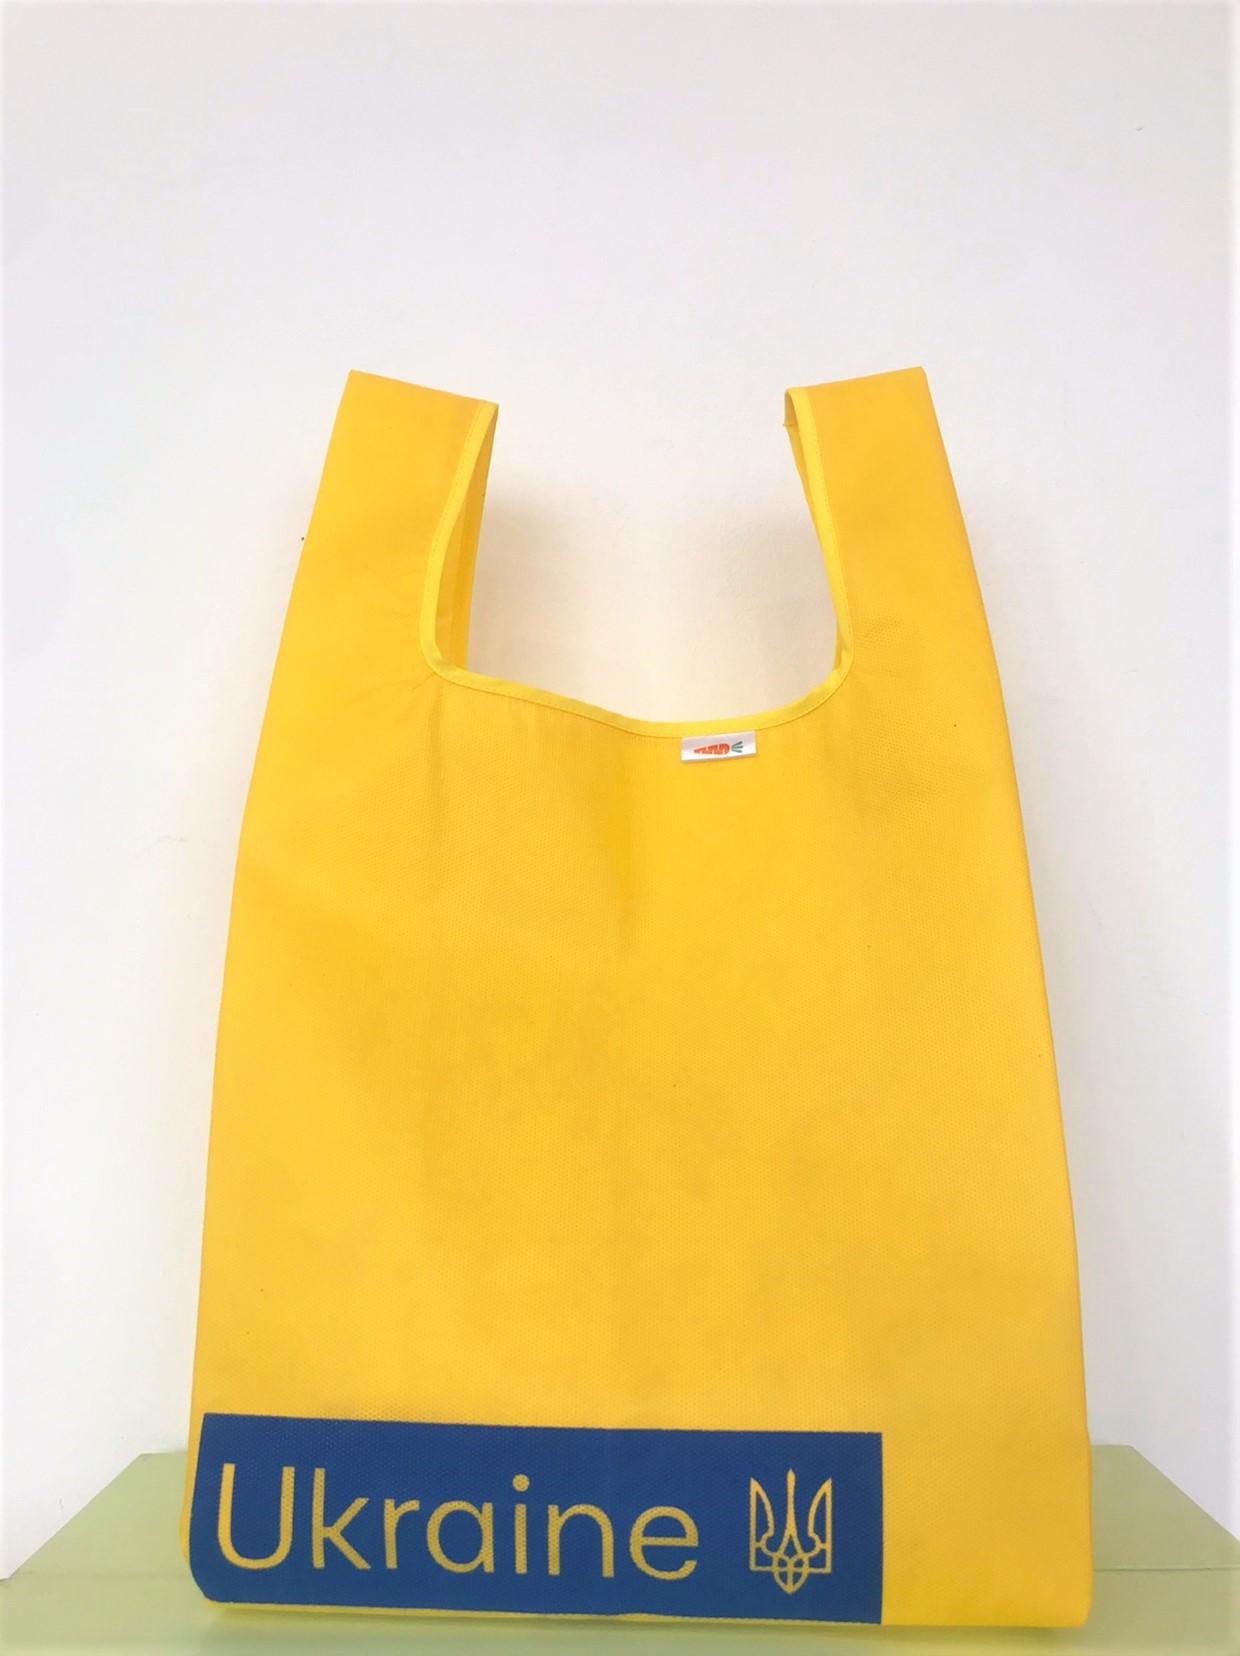 Reusable tote bag, handmade. Shopping bag, grocery bag..